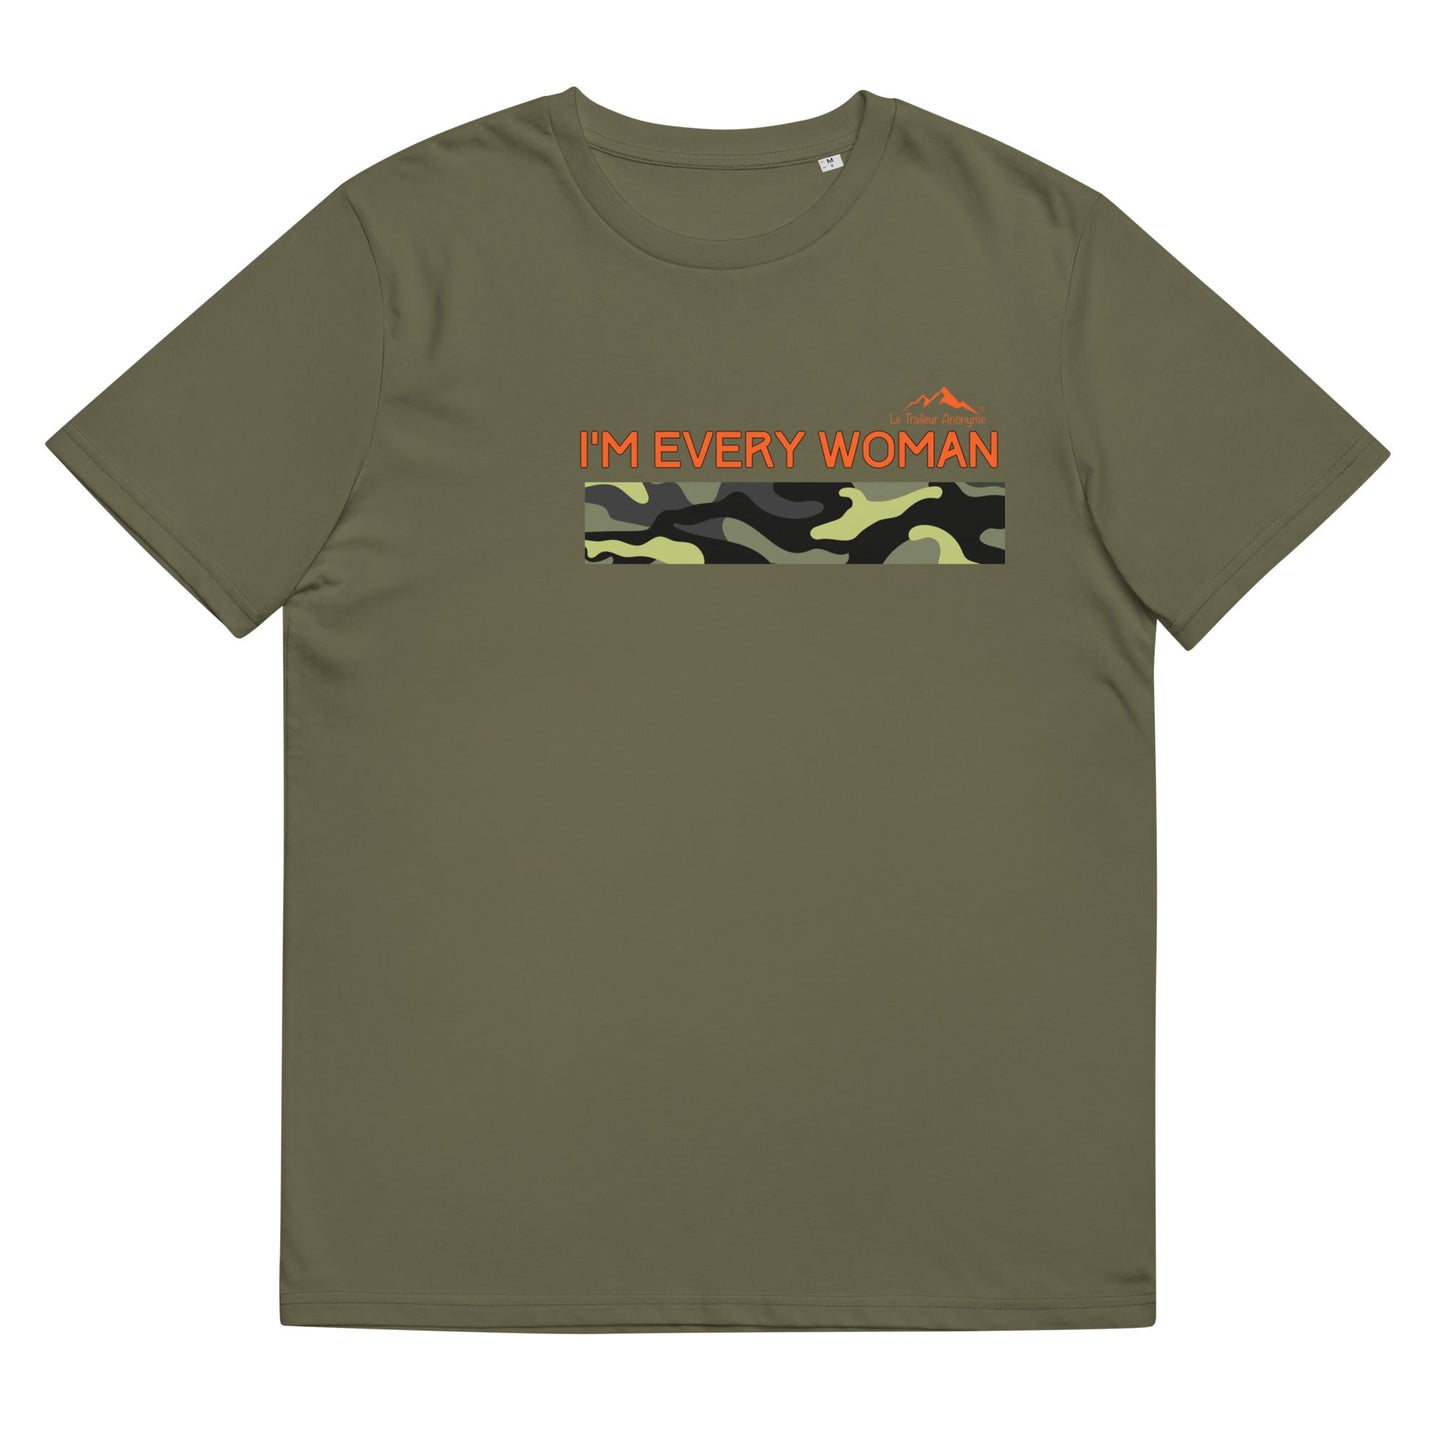 T-Shirt -Unisexe - Coton biologique - Collection Hommage - Army - Le Traileur Anonyme